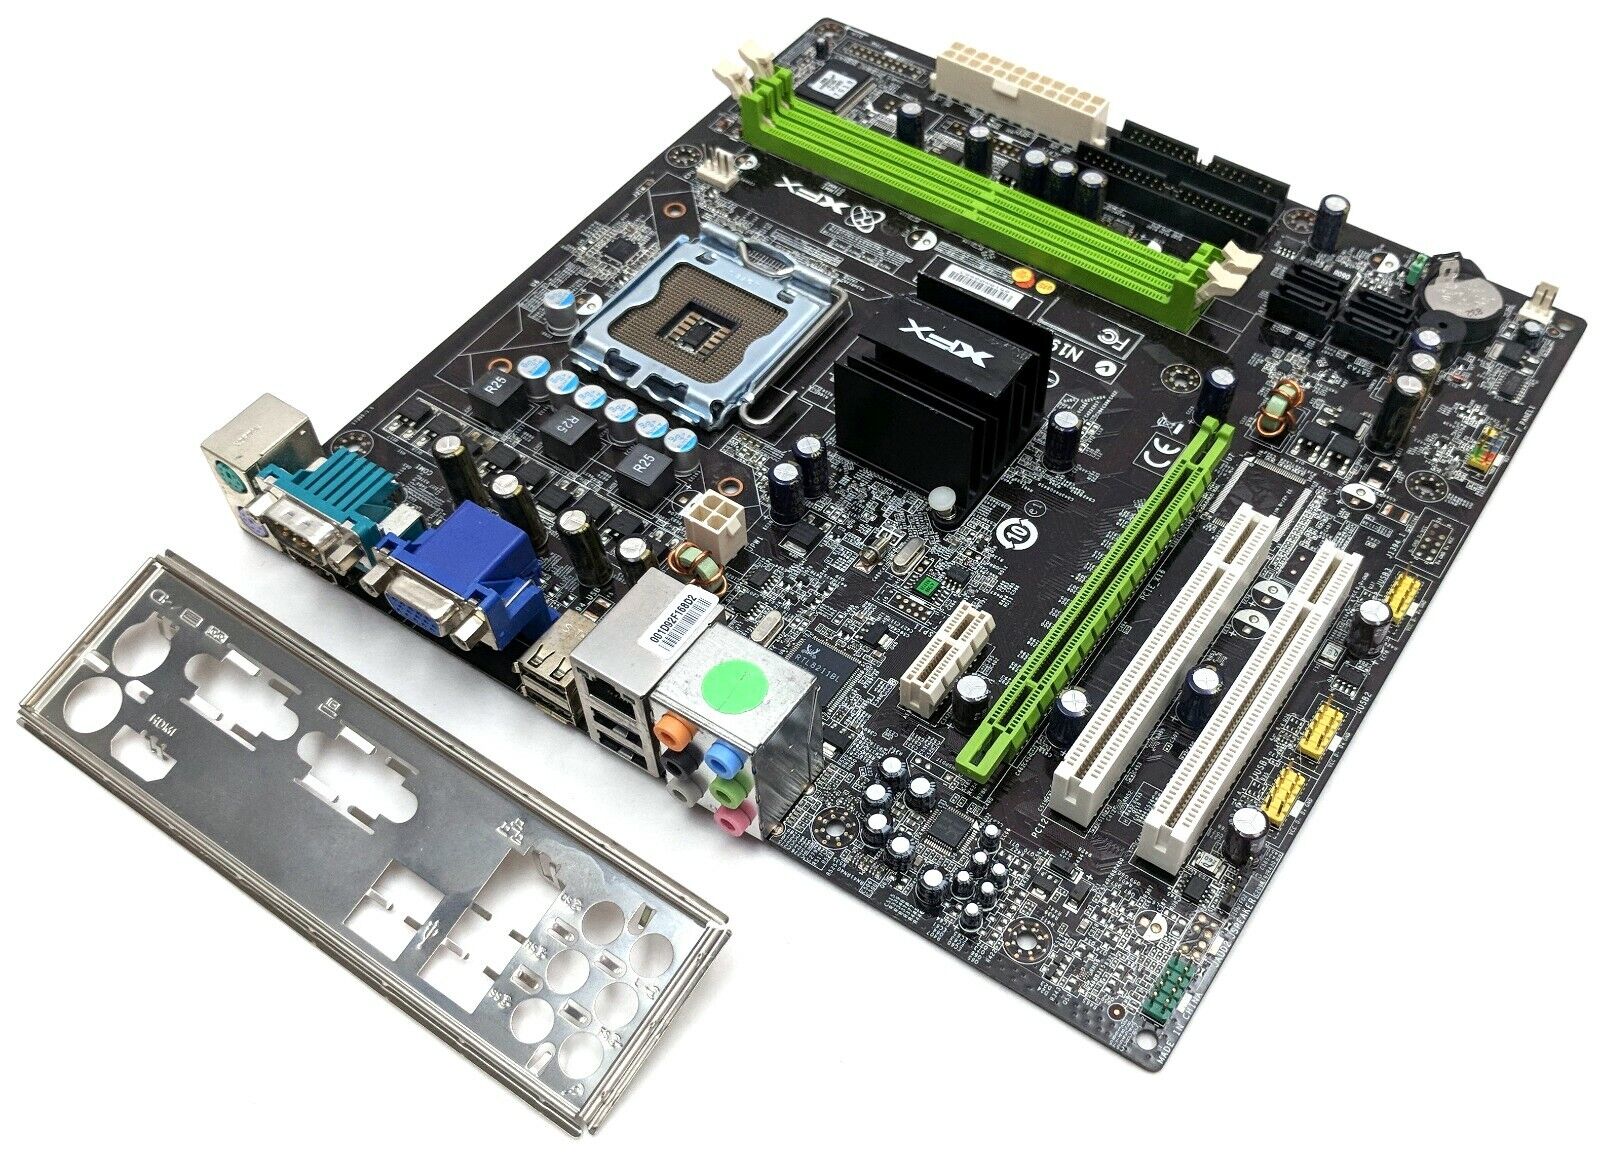 XFX MG-63Mi-7159 V1.0 nForce 630i GeForce 7150 Motherboard LGA 775/Socket T DDR2